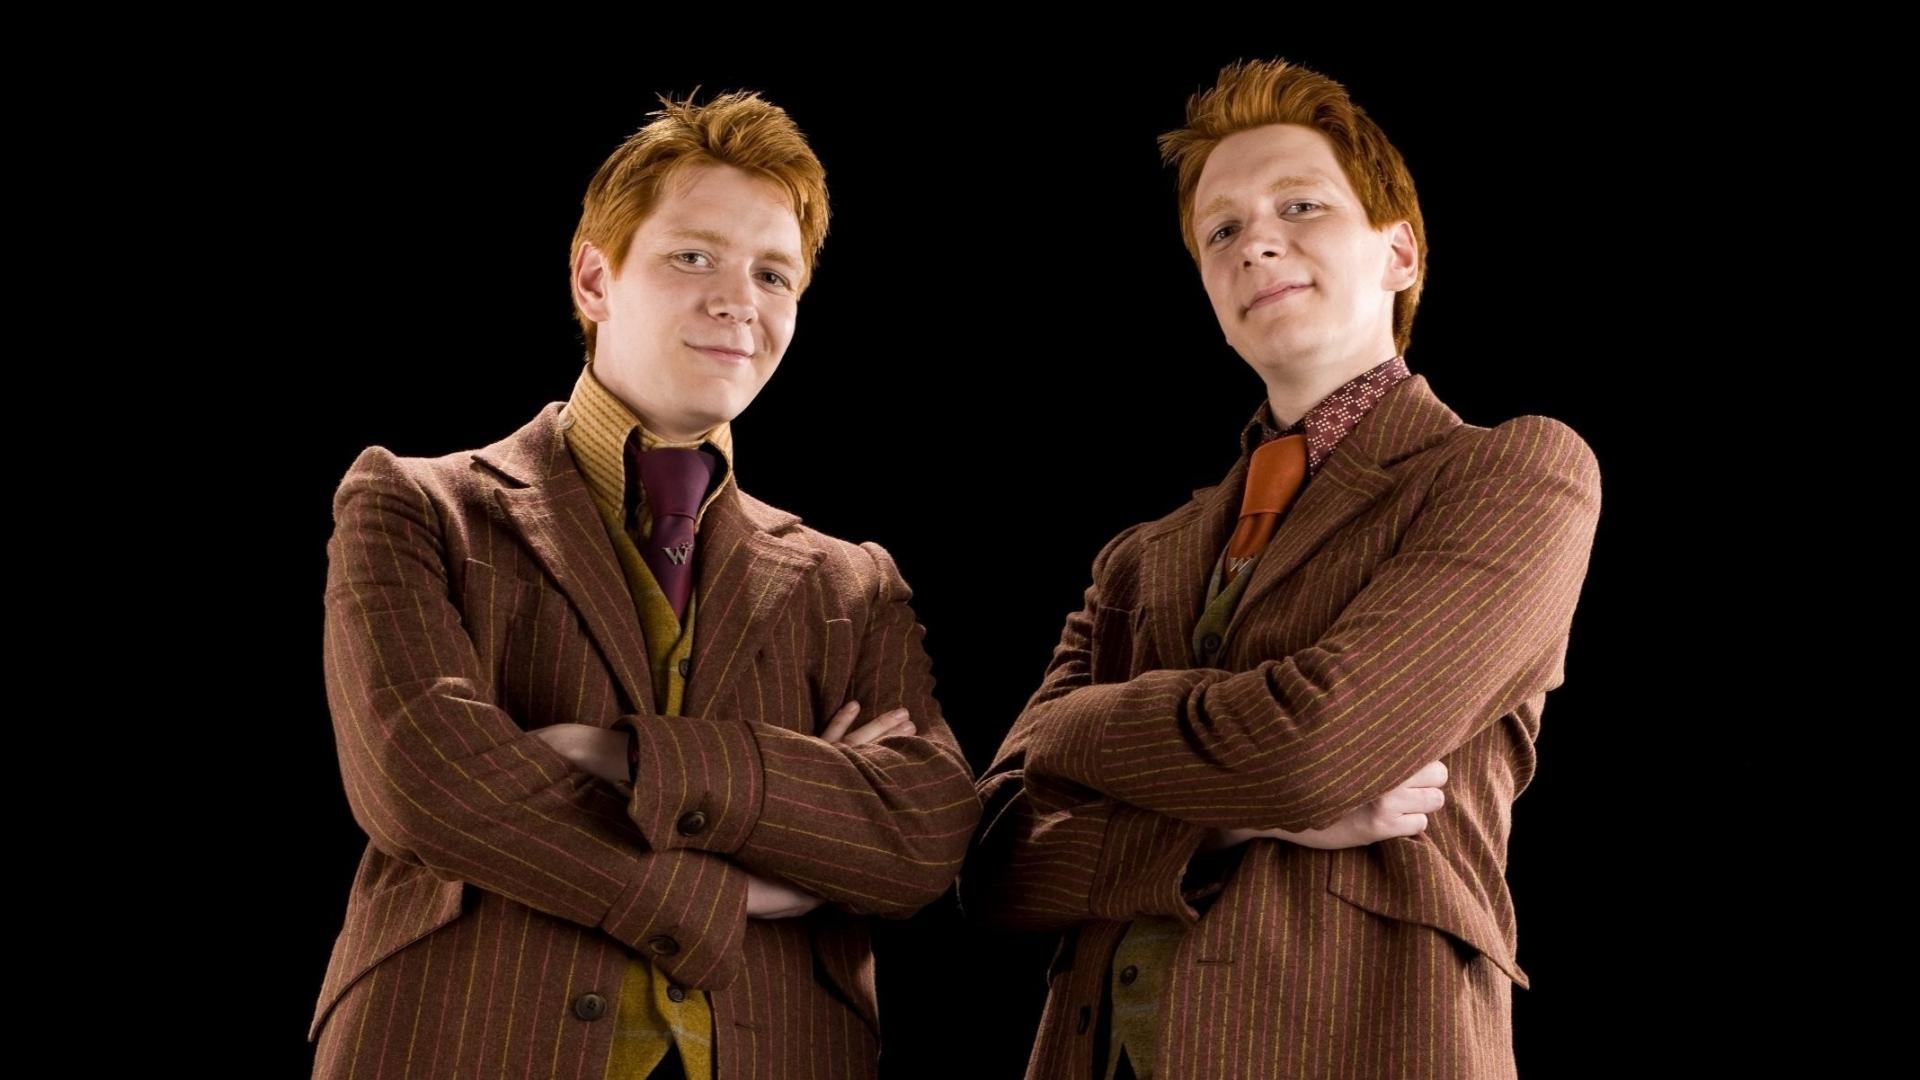 Fred Weasley, George Weasley, Weasley twins, Harry Potter universe, 1920x1080 Full HD Desktop